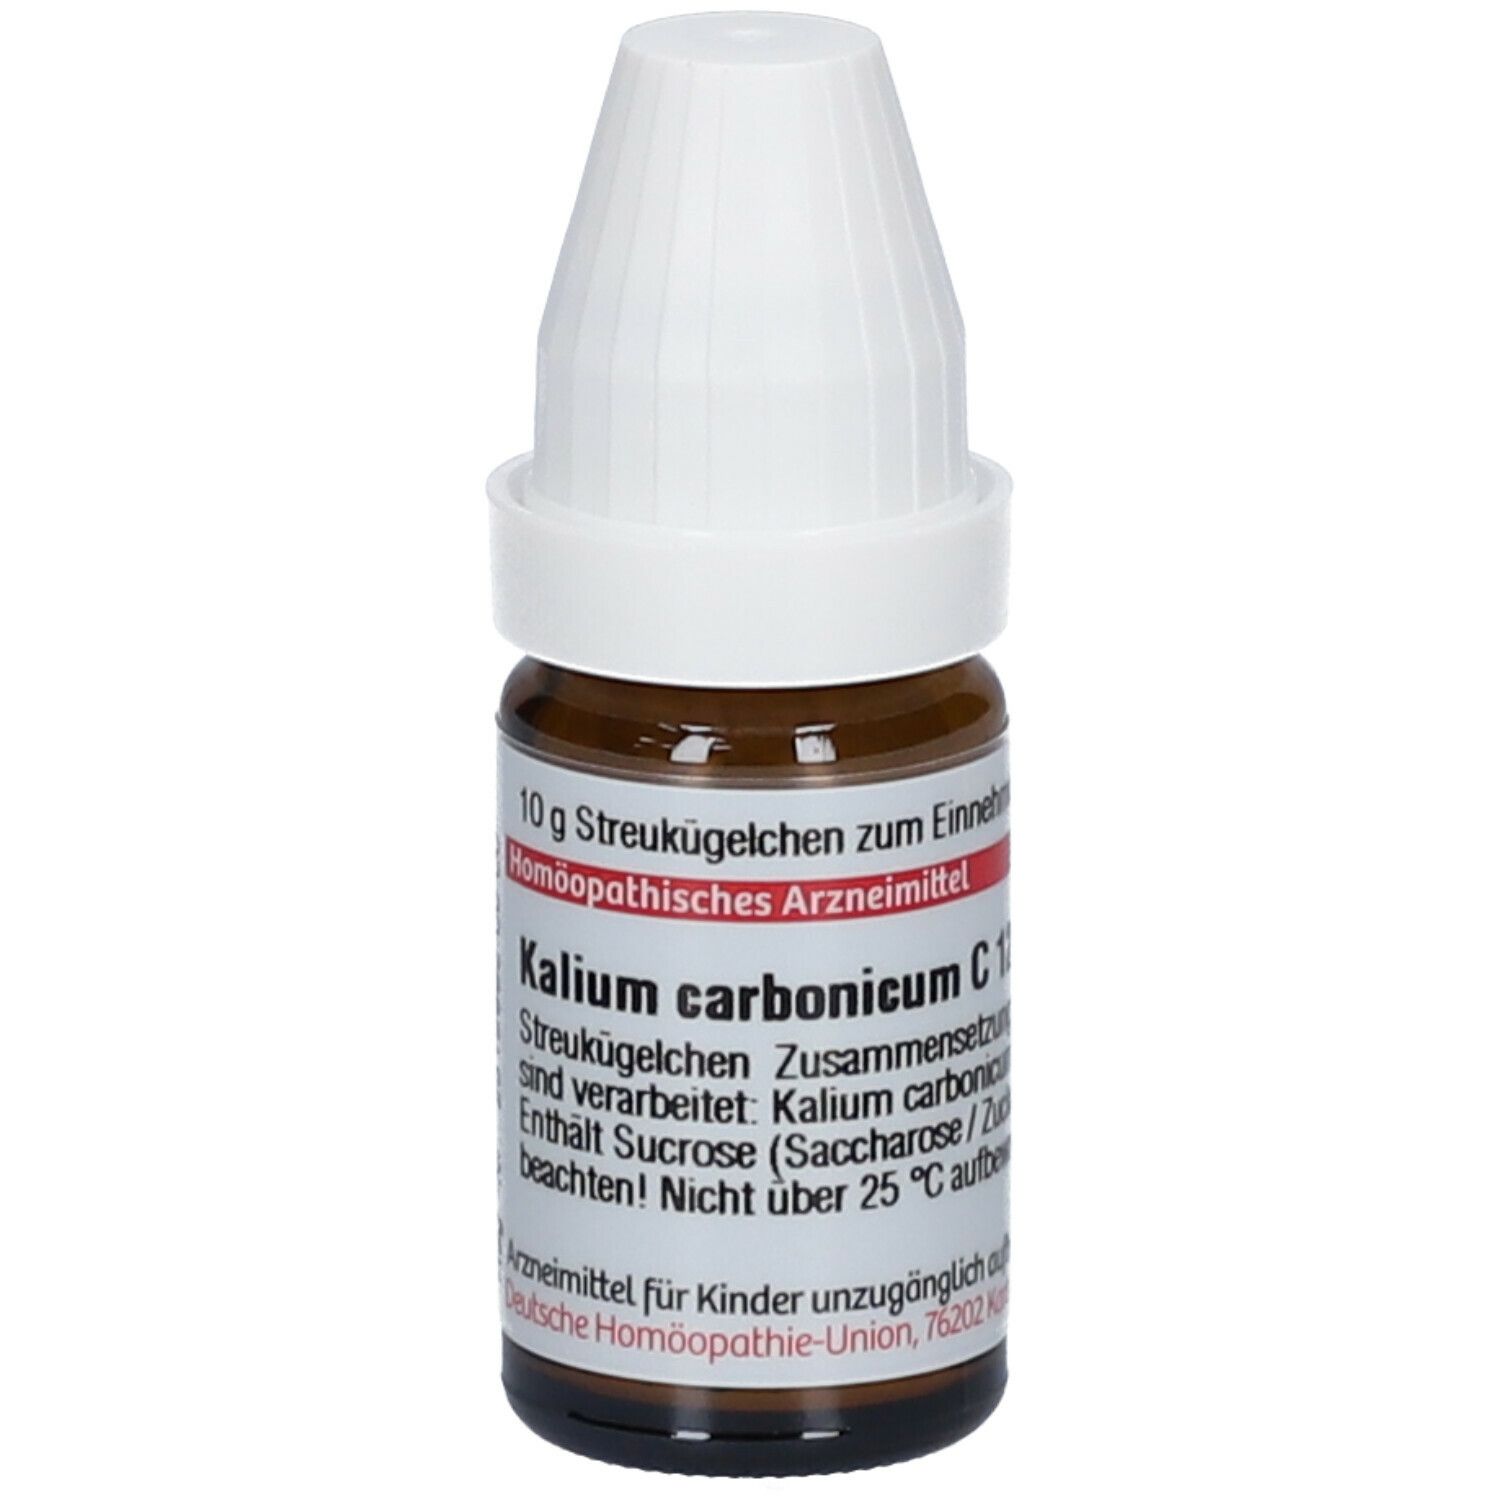 DHU Kalium Carbonicum C12